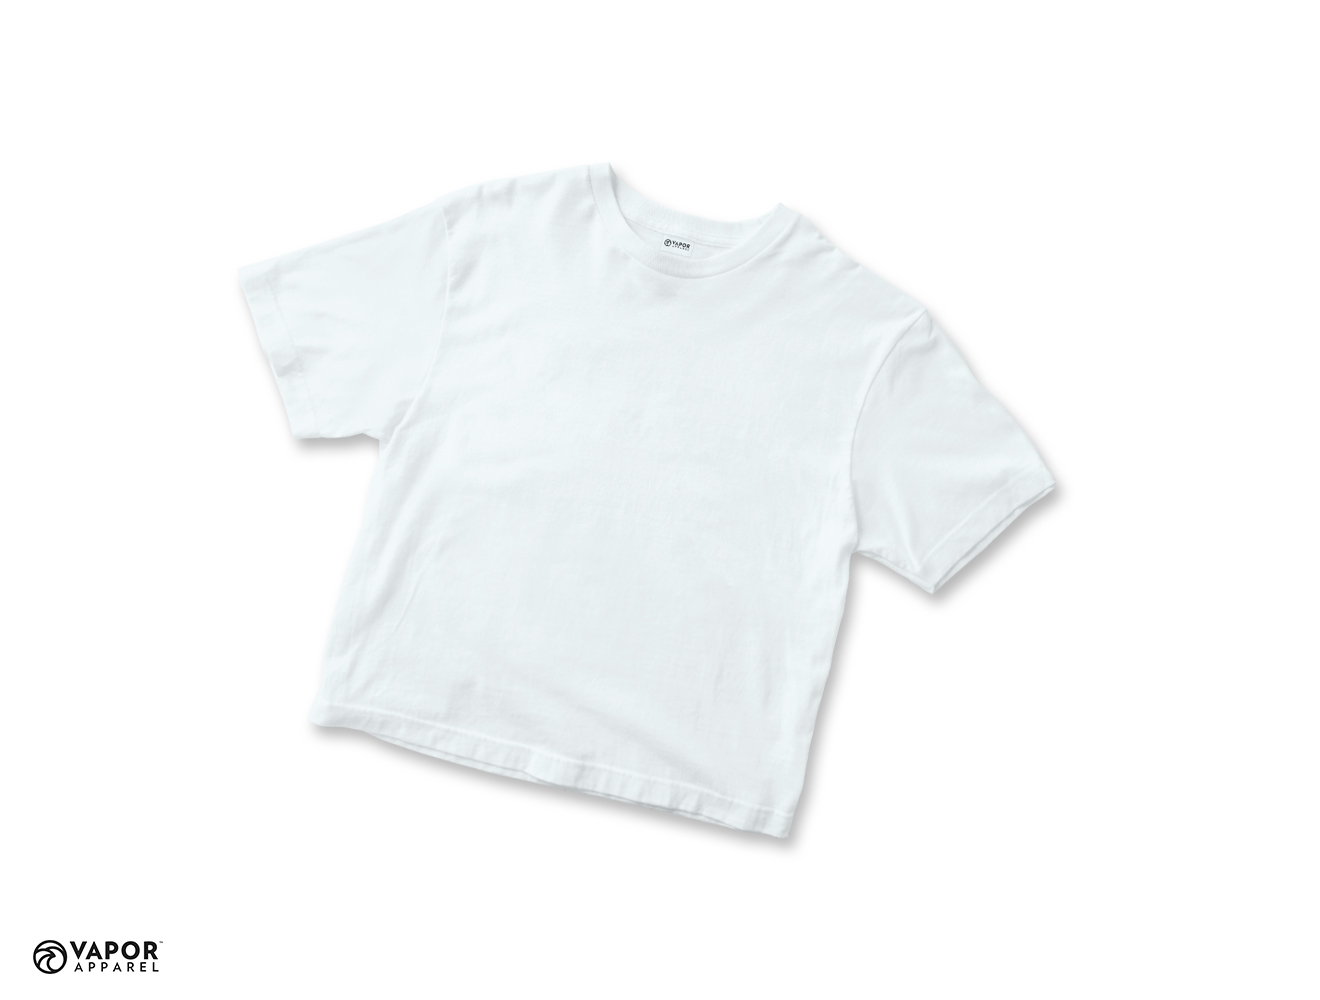 Vapor Sublimation T-Shirt for Junior size 80 - White